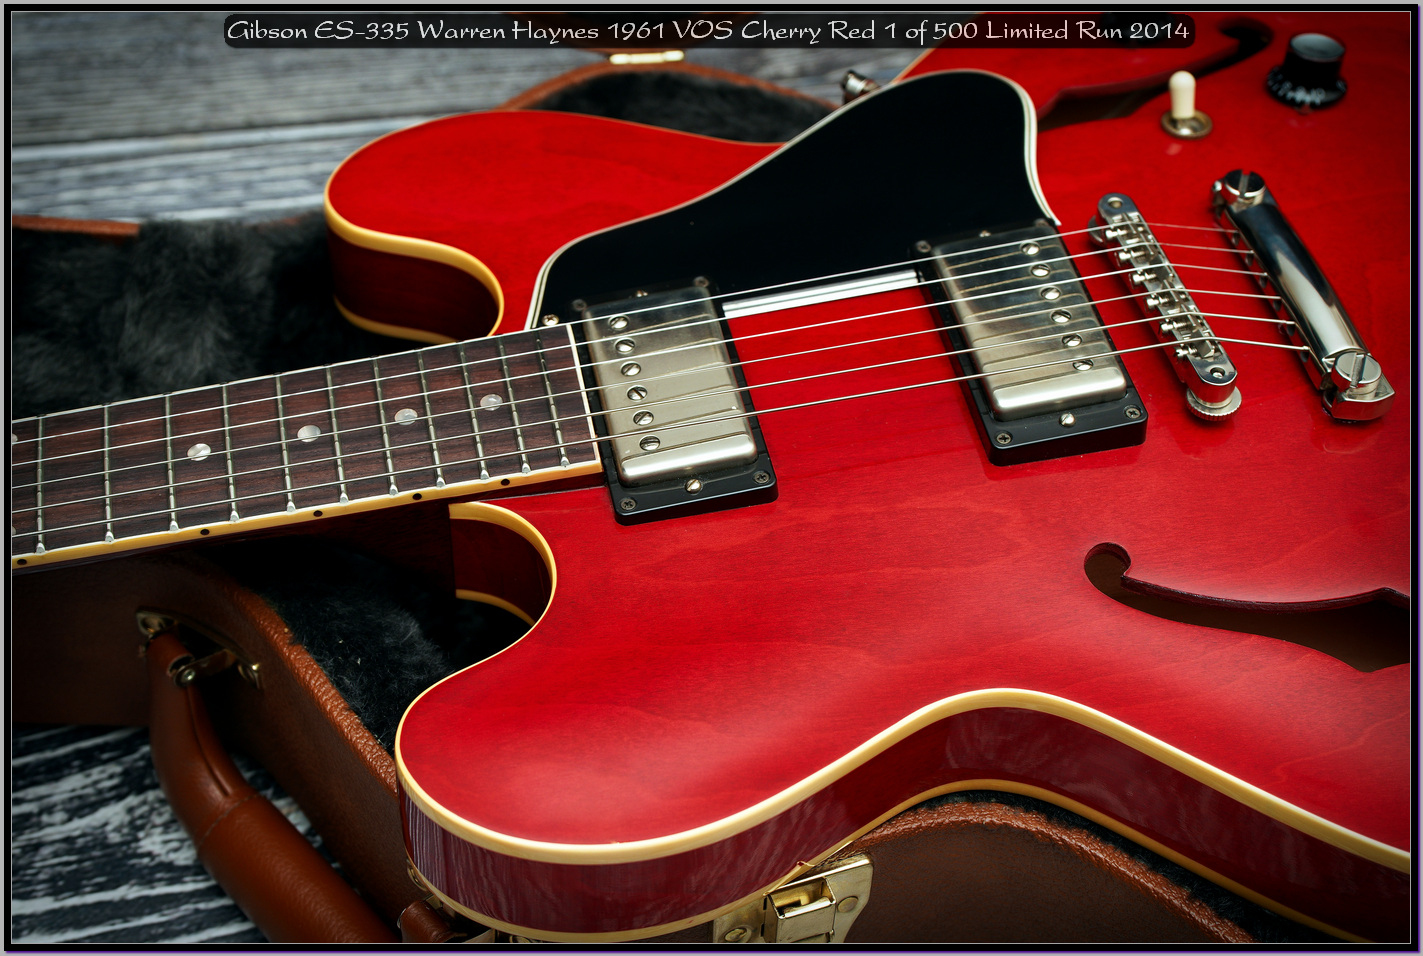 Gibson ES-335 Warren Haynes 1961 VOS Cherry Red 1 of 500 Limited Run 2014 13_x1440.jpg